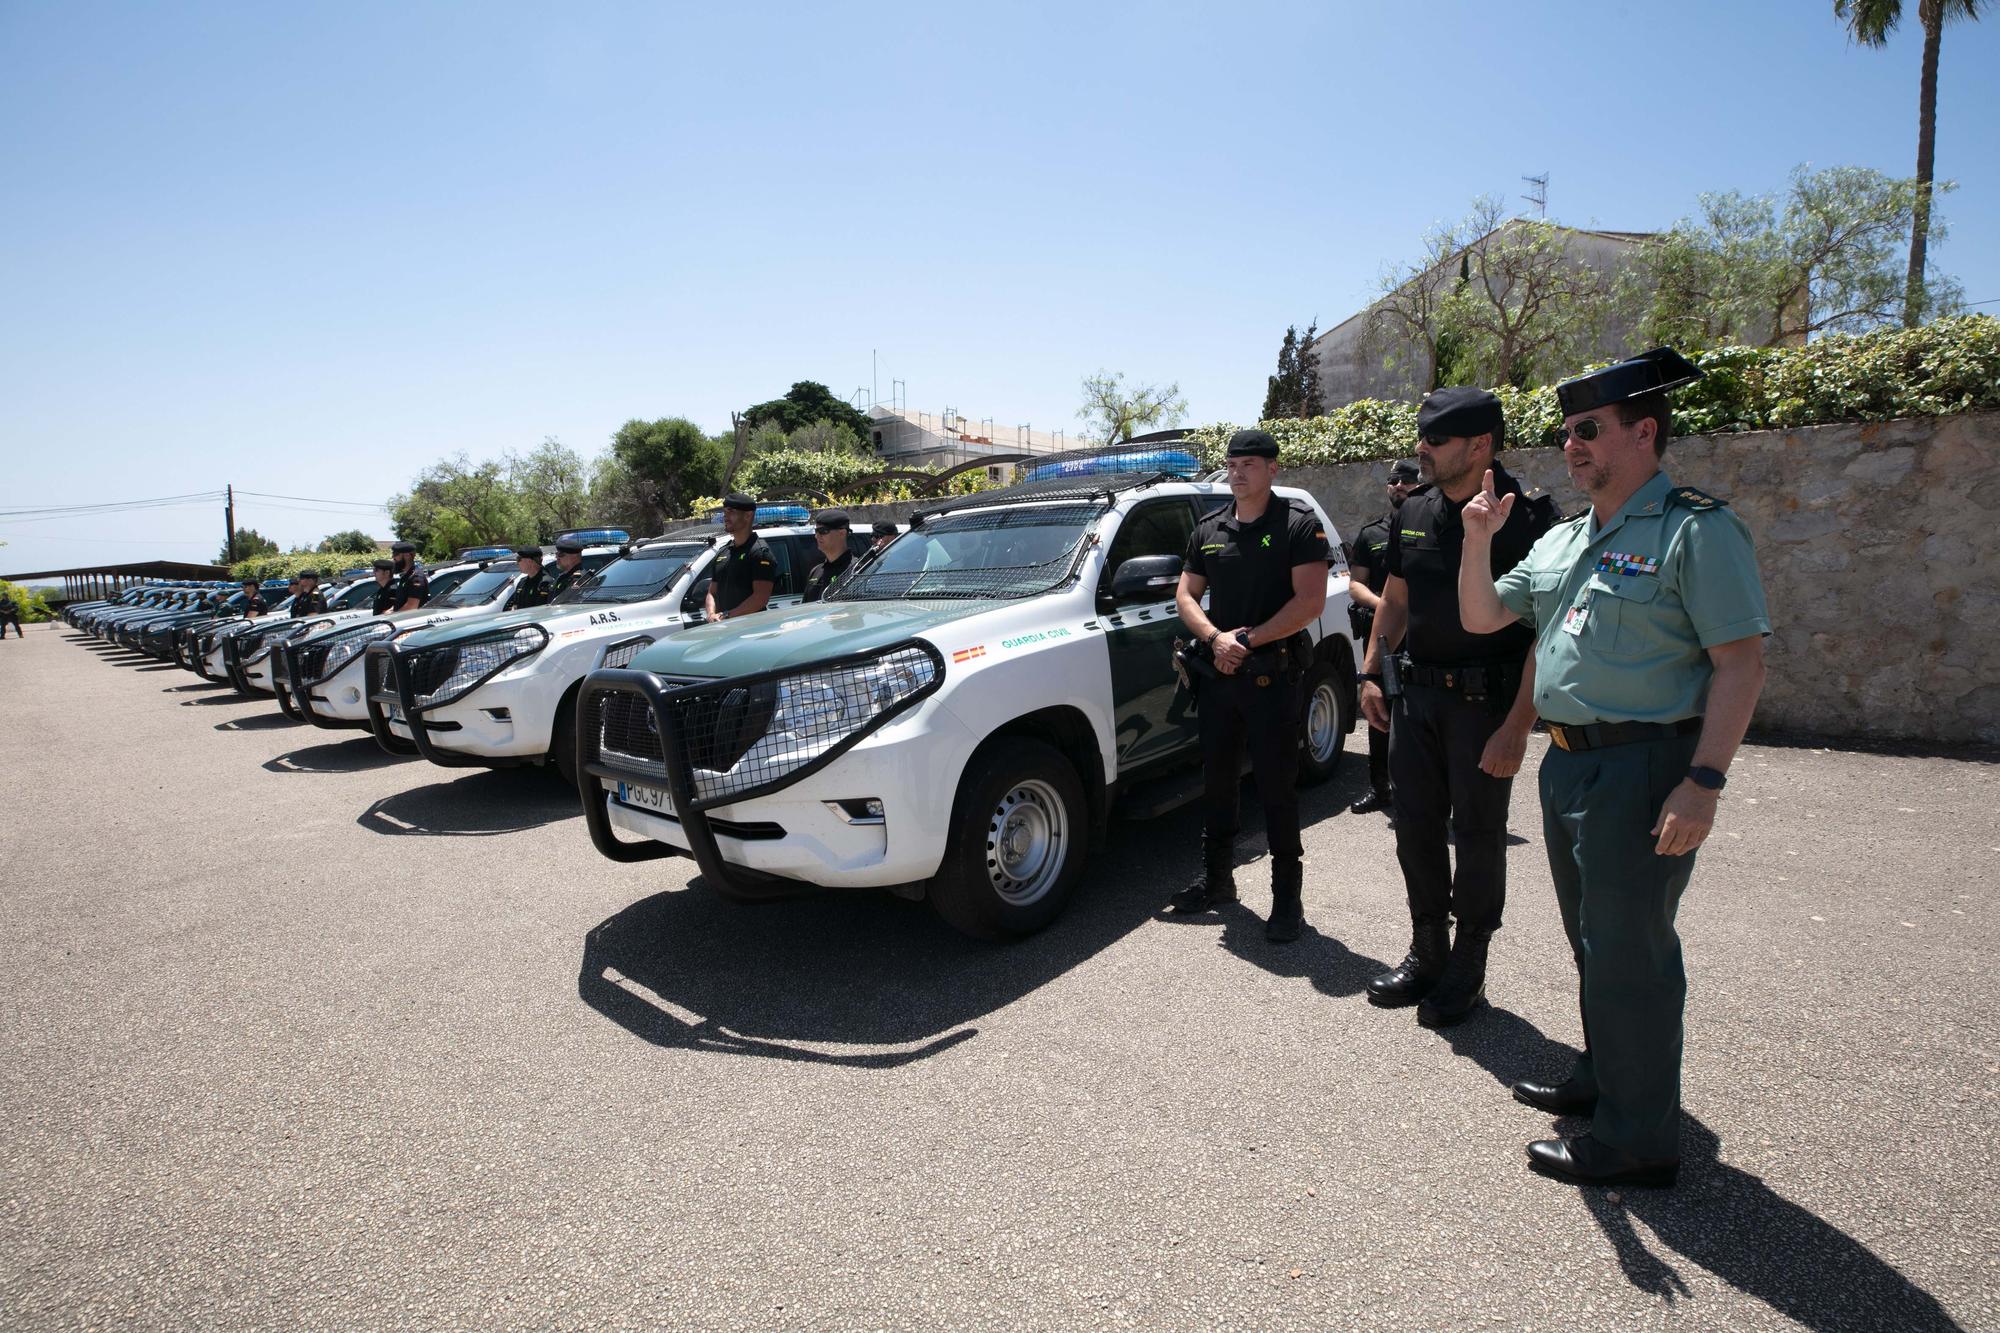 Llegan 49 agentes especiales de la Guardia Civil para actuar en Ibiza durante el verano